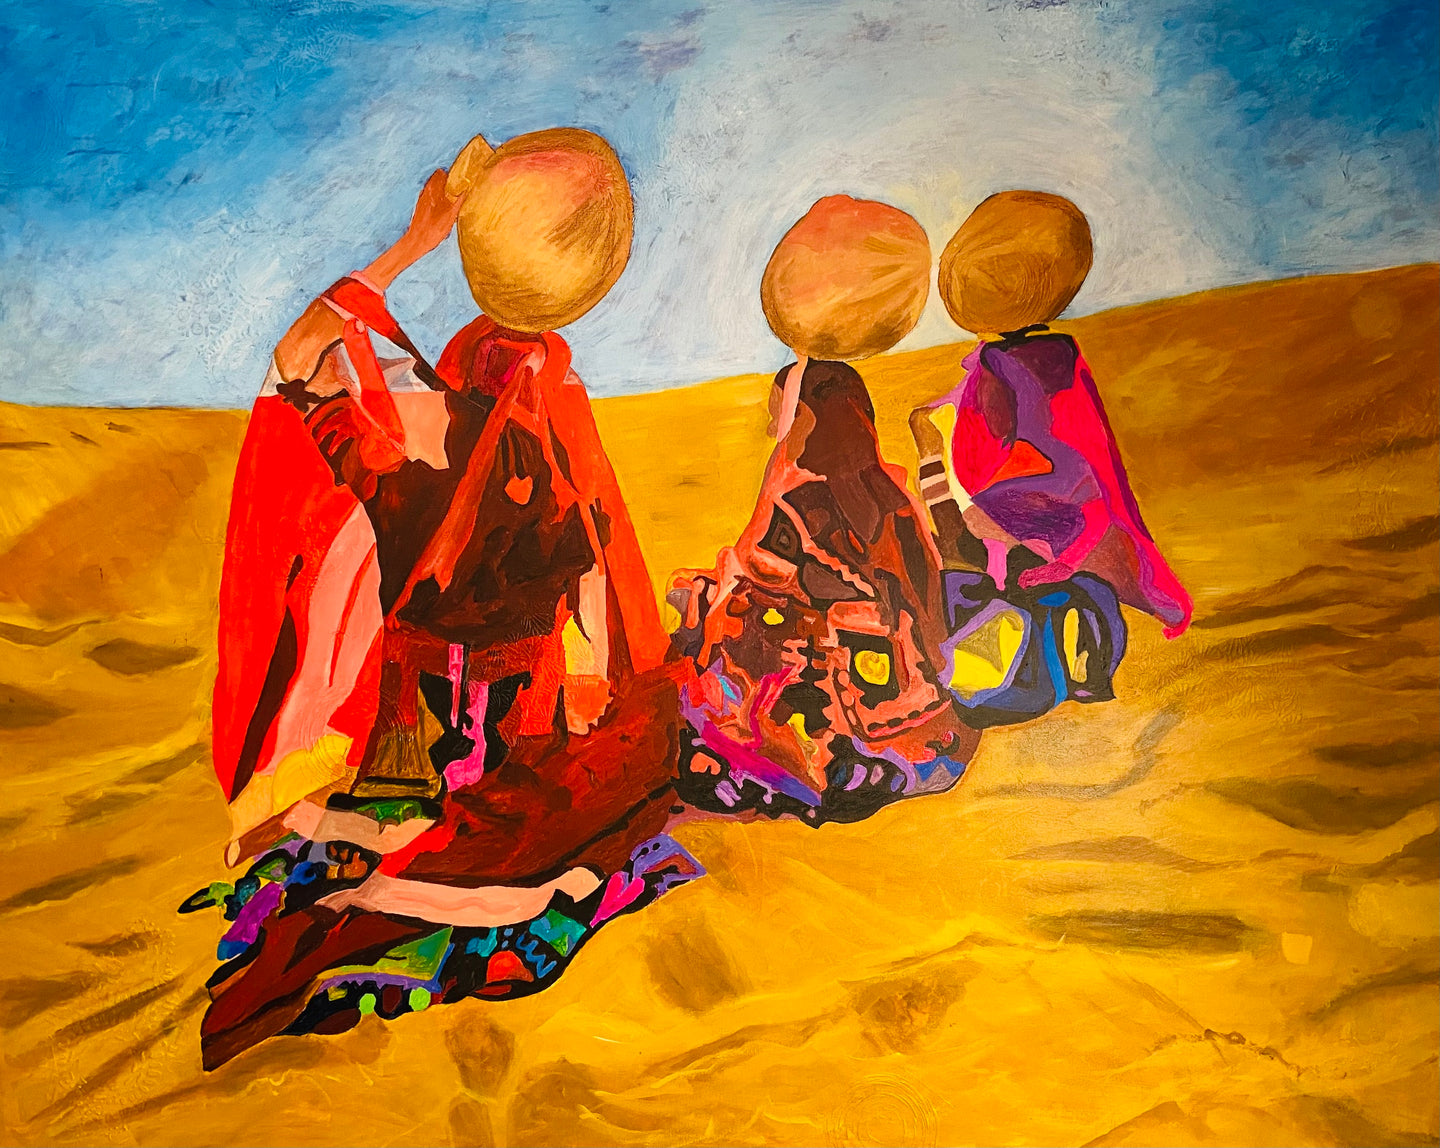 Gypsies in the Desert by Priya Kapoor